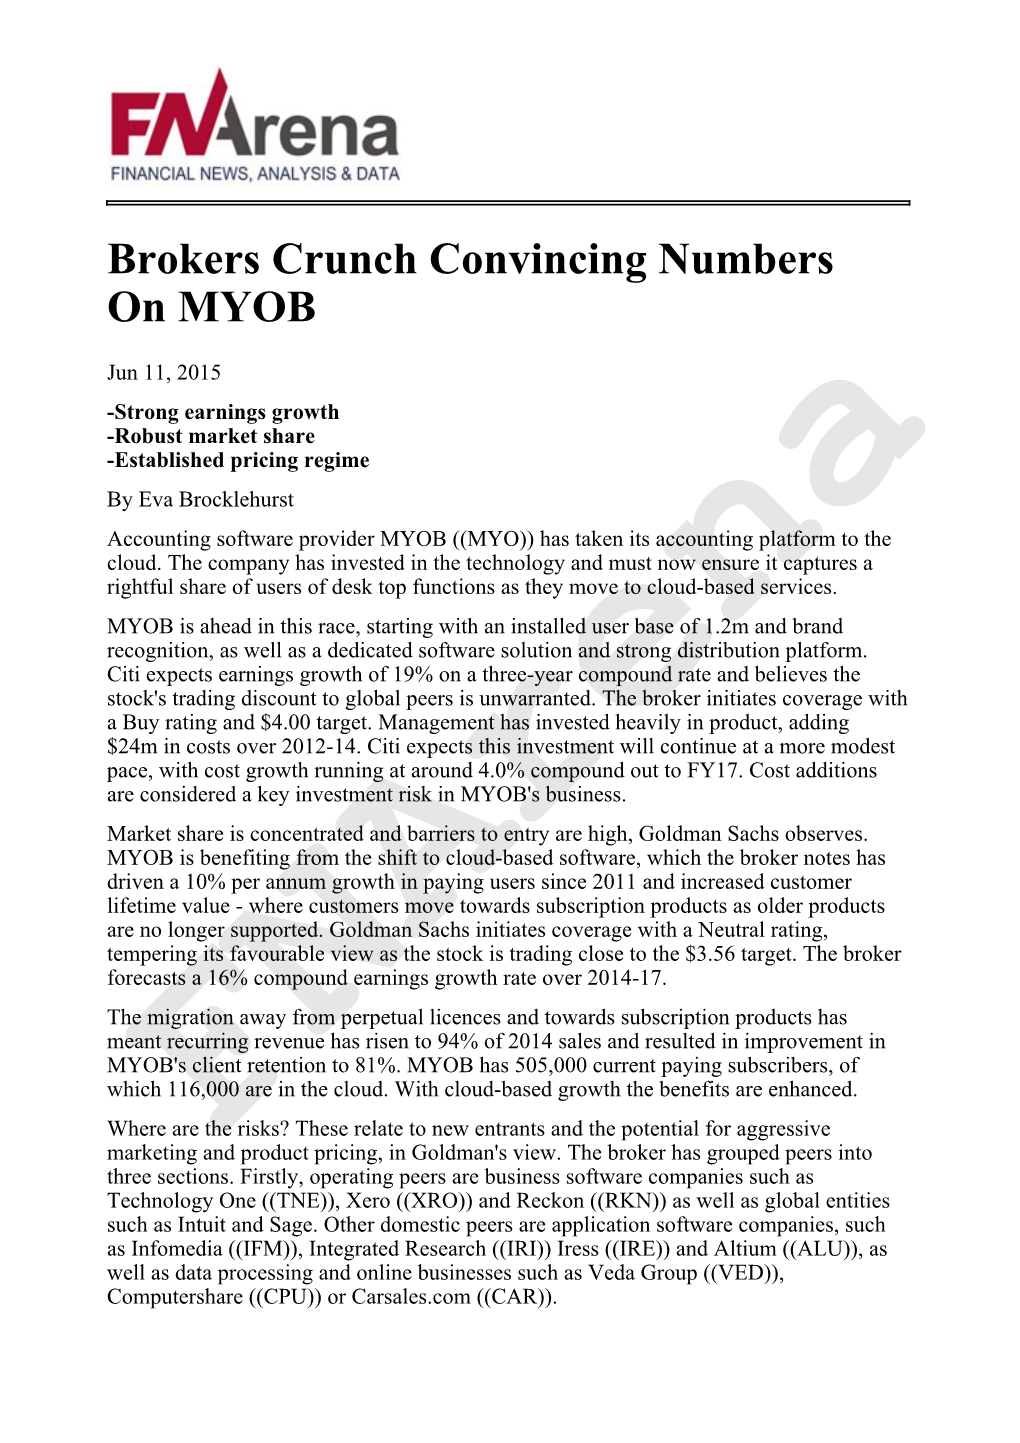 Brokers Crunch Convincing Numbers on MYOB